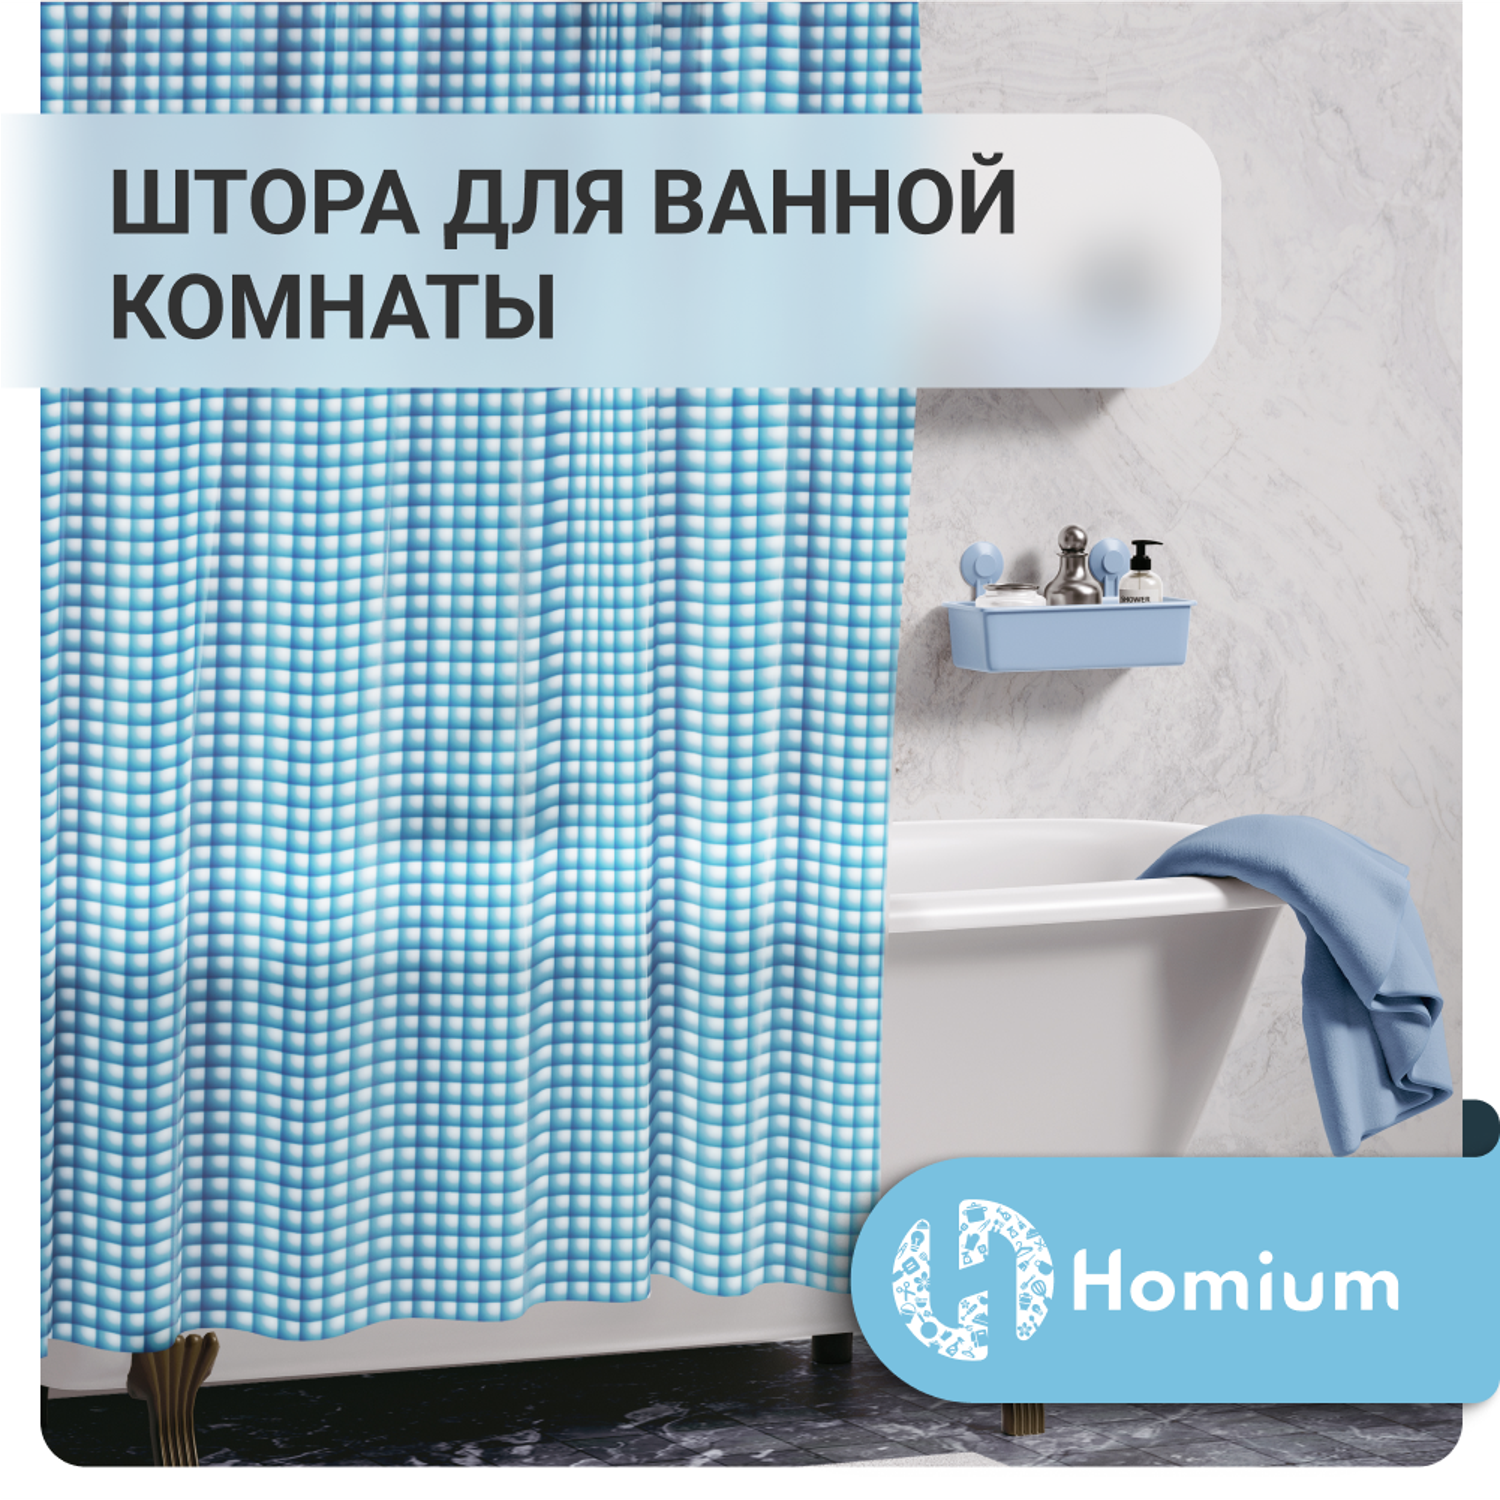 Штора для ванной комнаты ZDK Homium Bath Neo цвет голубой размер 180*180 см - фото 2